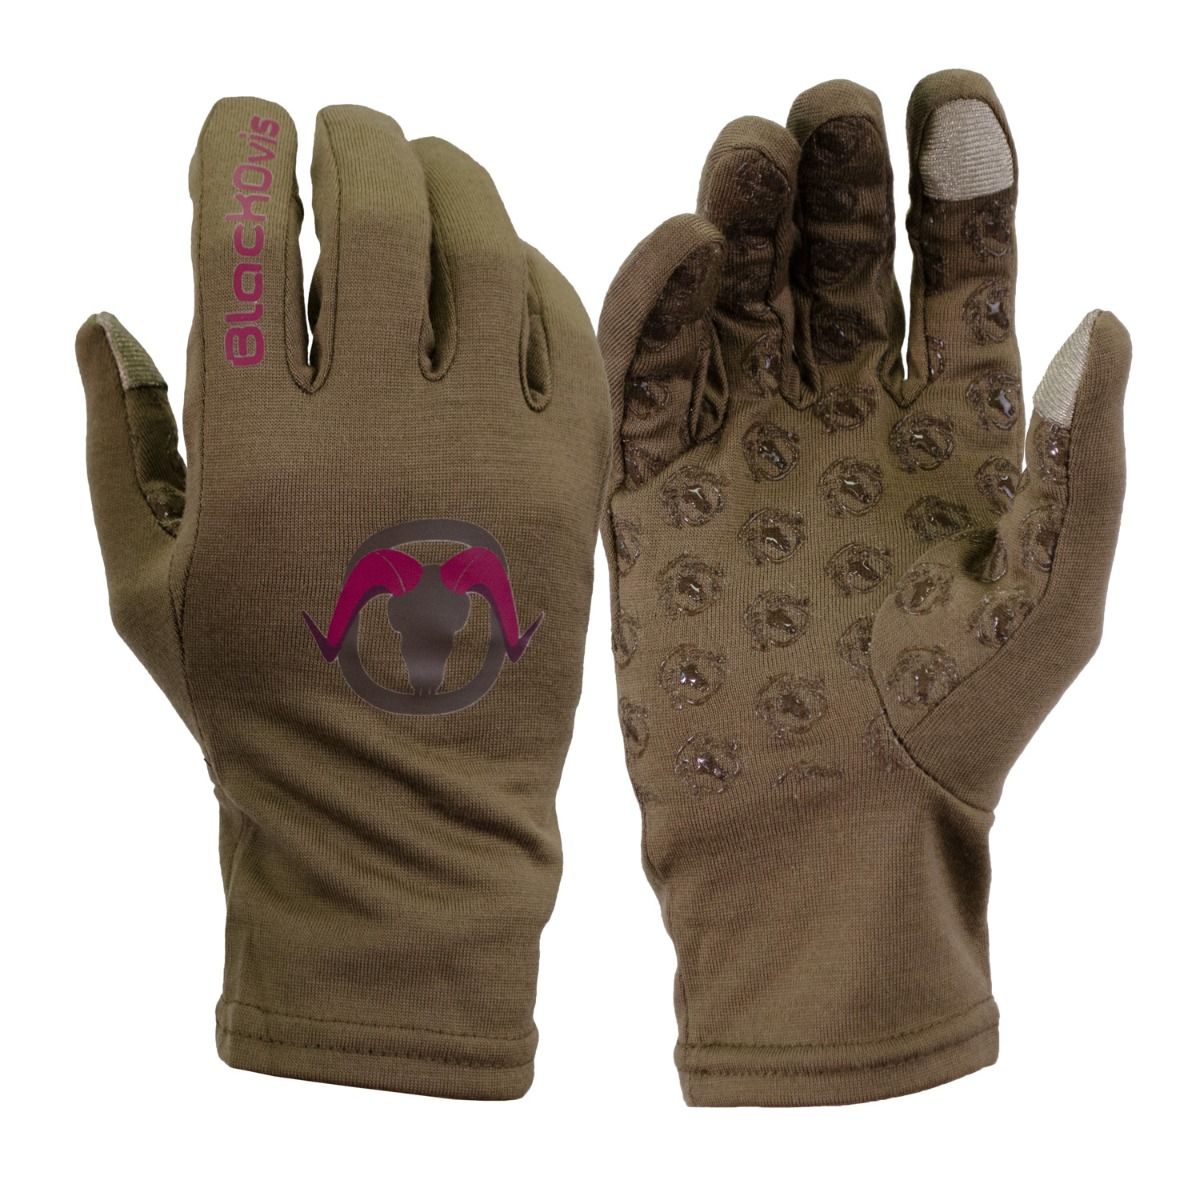 BlackOvis Tuscarora Merino Glove with Tech Tip, Merino Wool Gloves, Tech  Tip Gloves